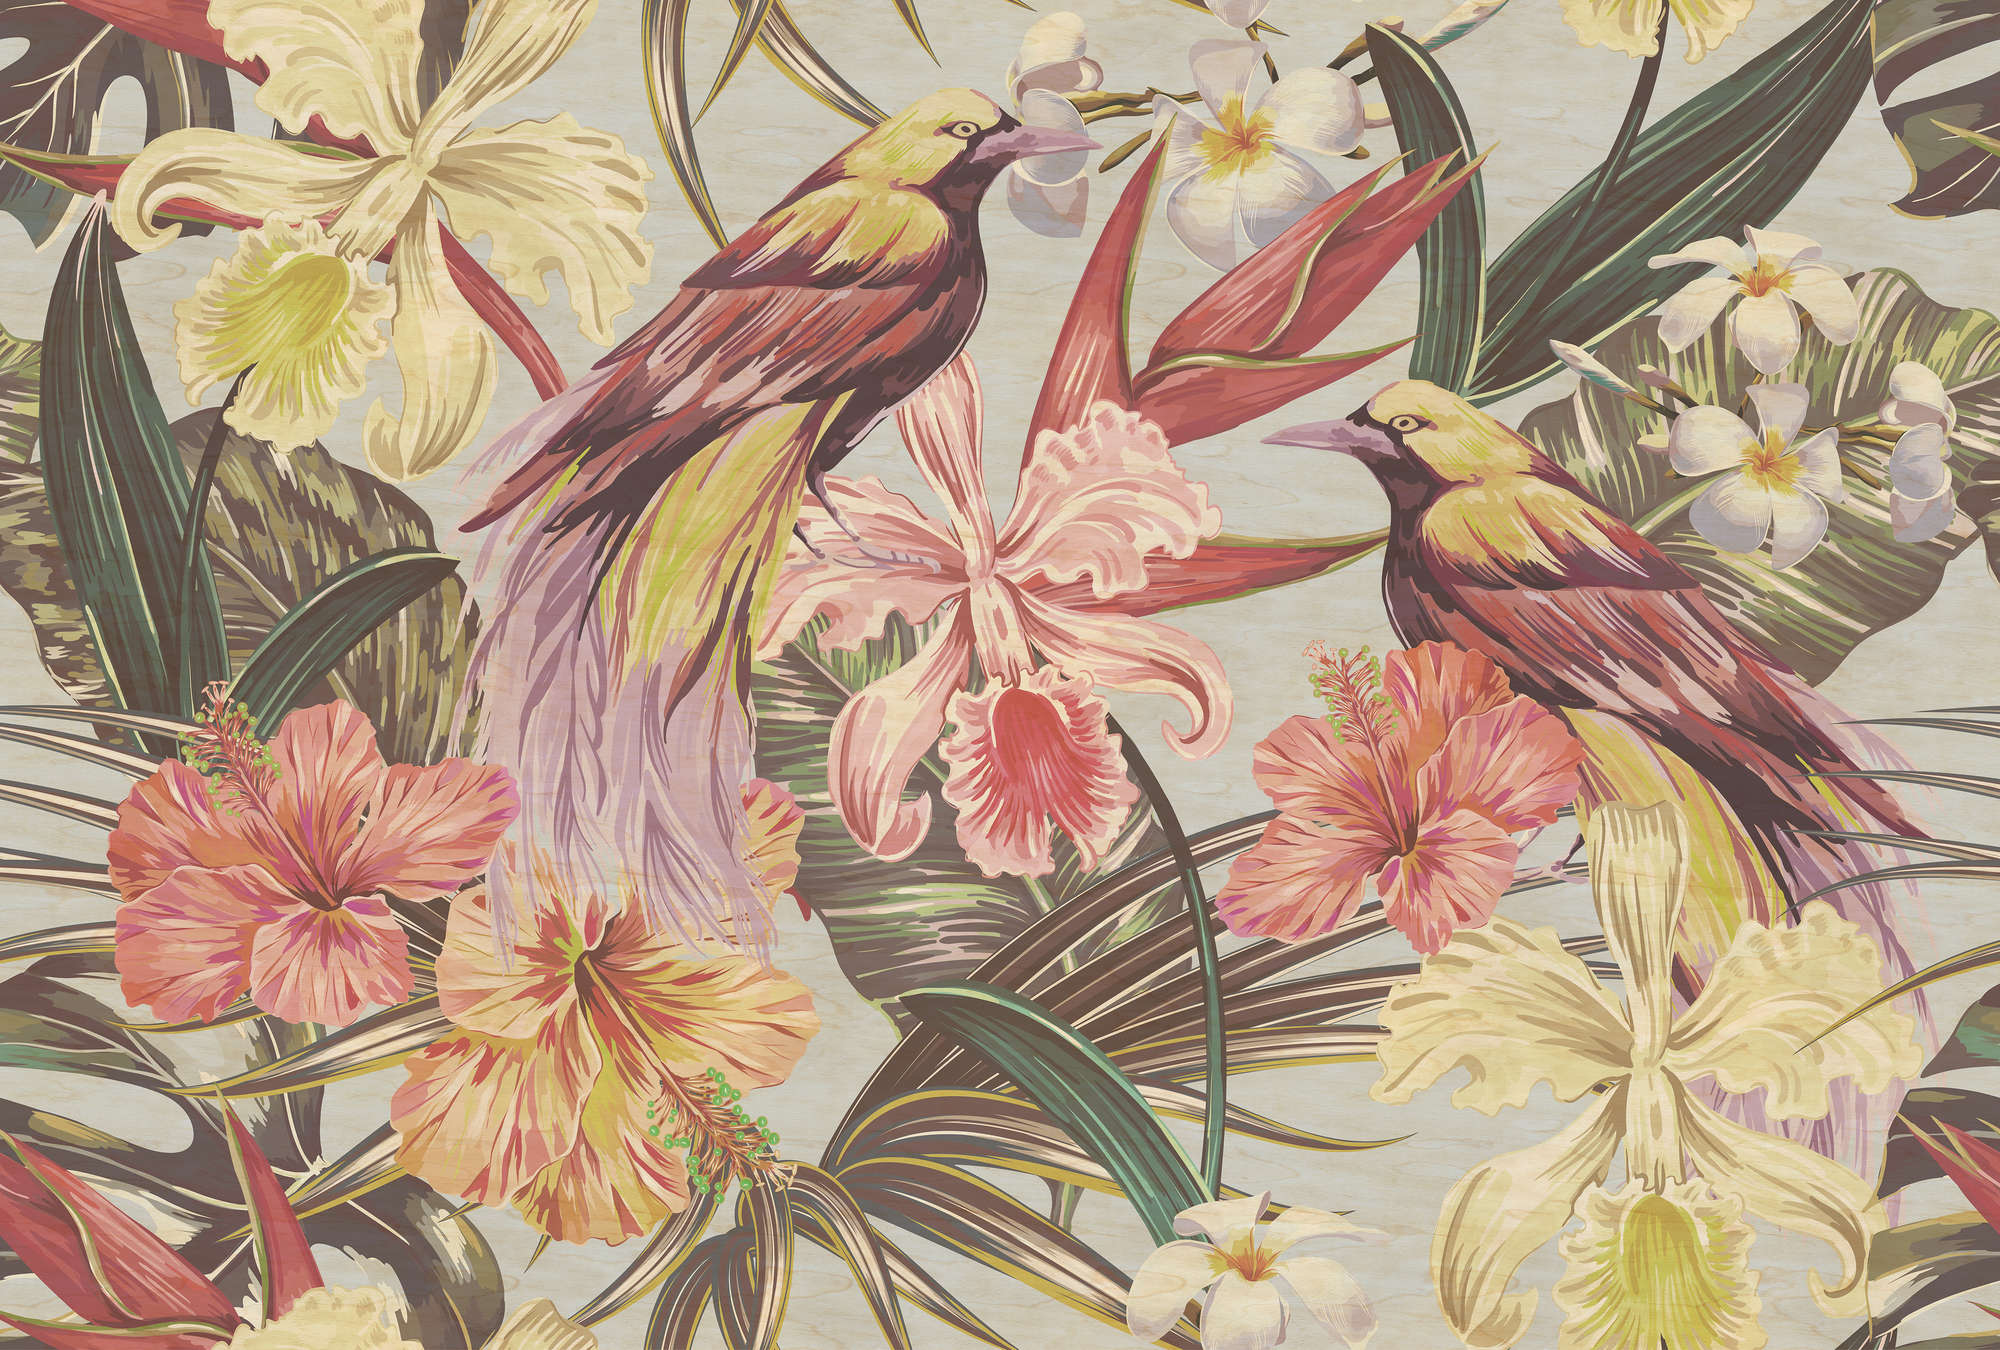             Exotische vogels 1 - Exotische vogels en bloemen behang in multiplex structuur - Beige, Roze | Pearl glad vlies
        